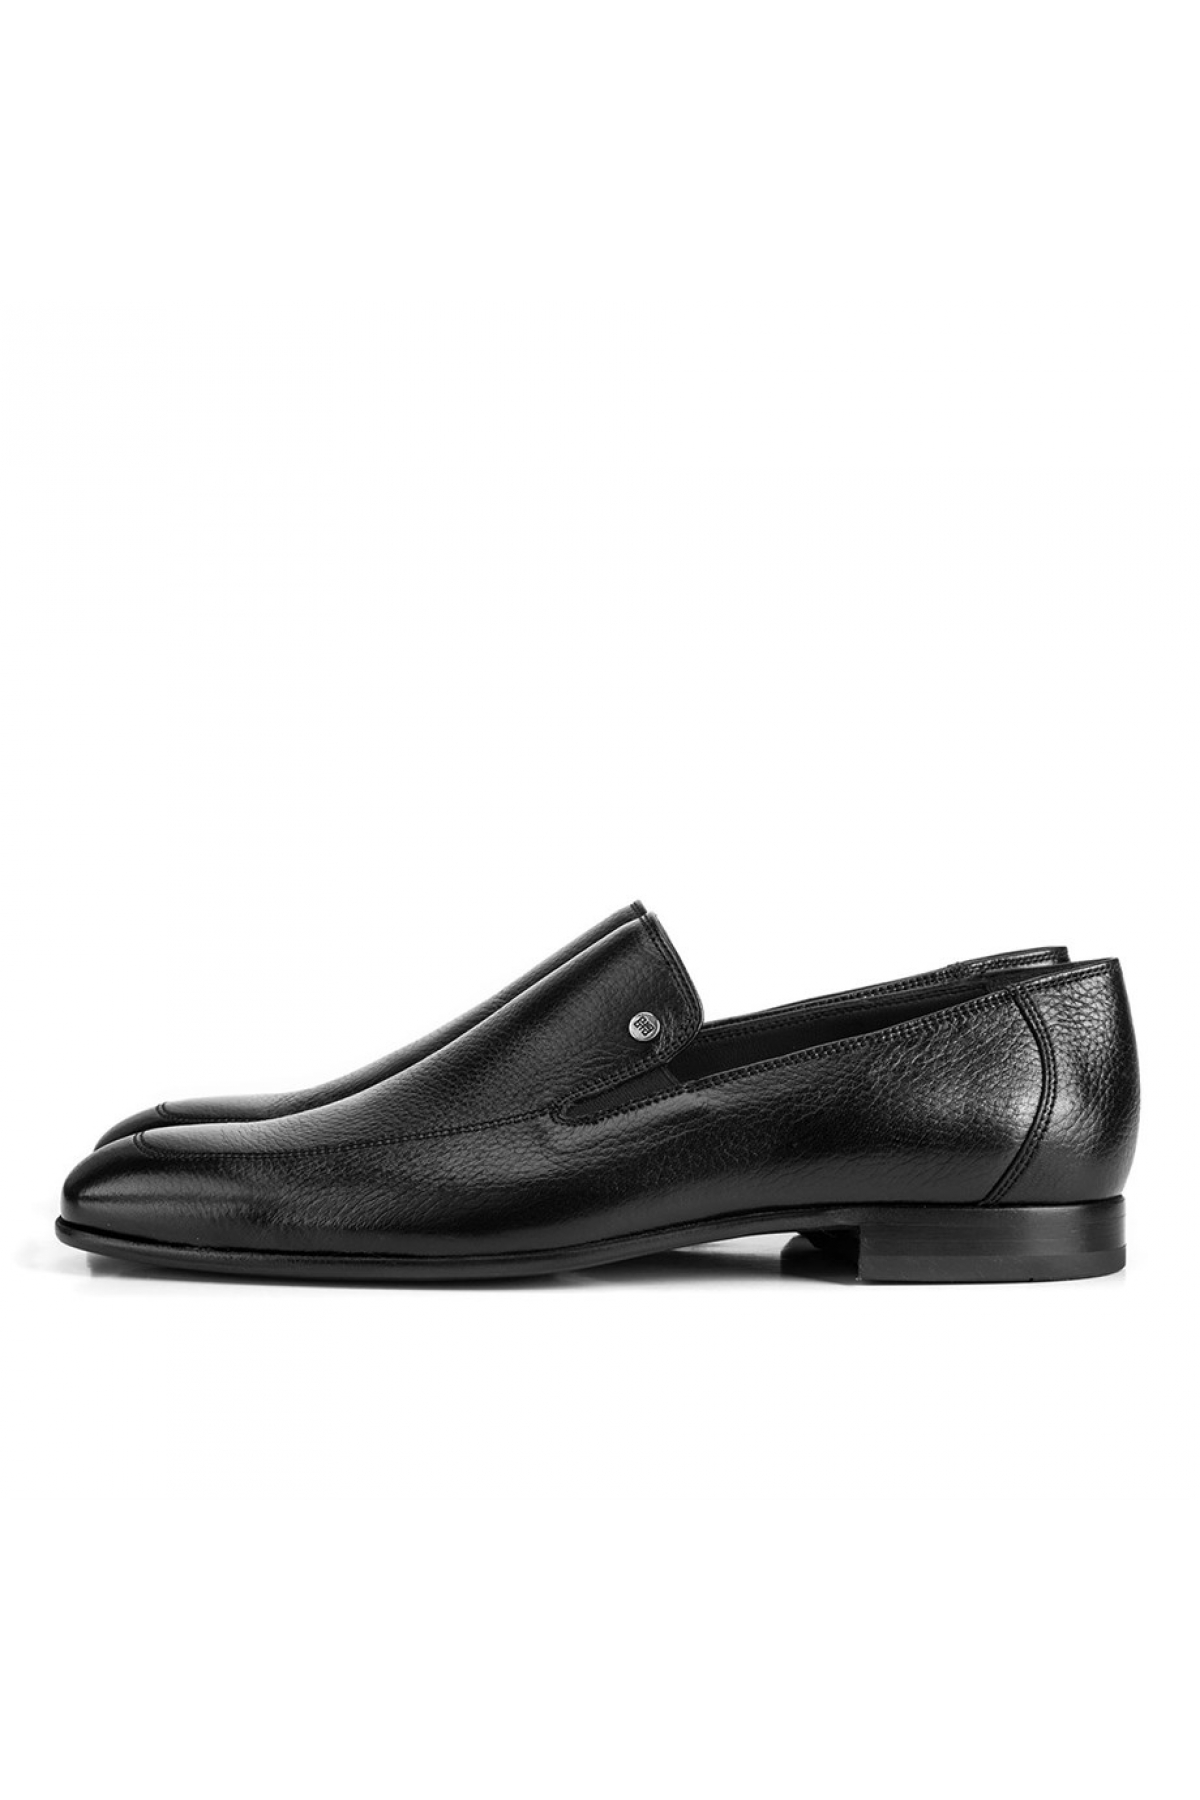 Flo Hakiki Deri Siyah Erkek Klasik Ayakkabı. 5